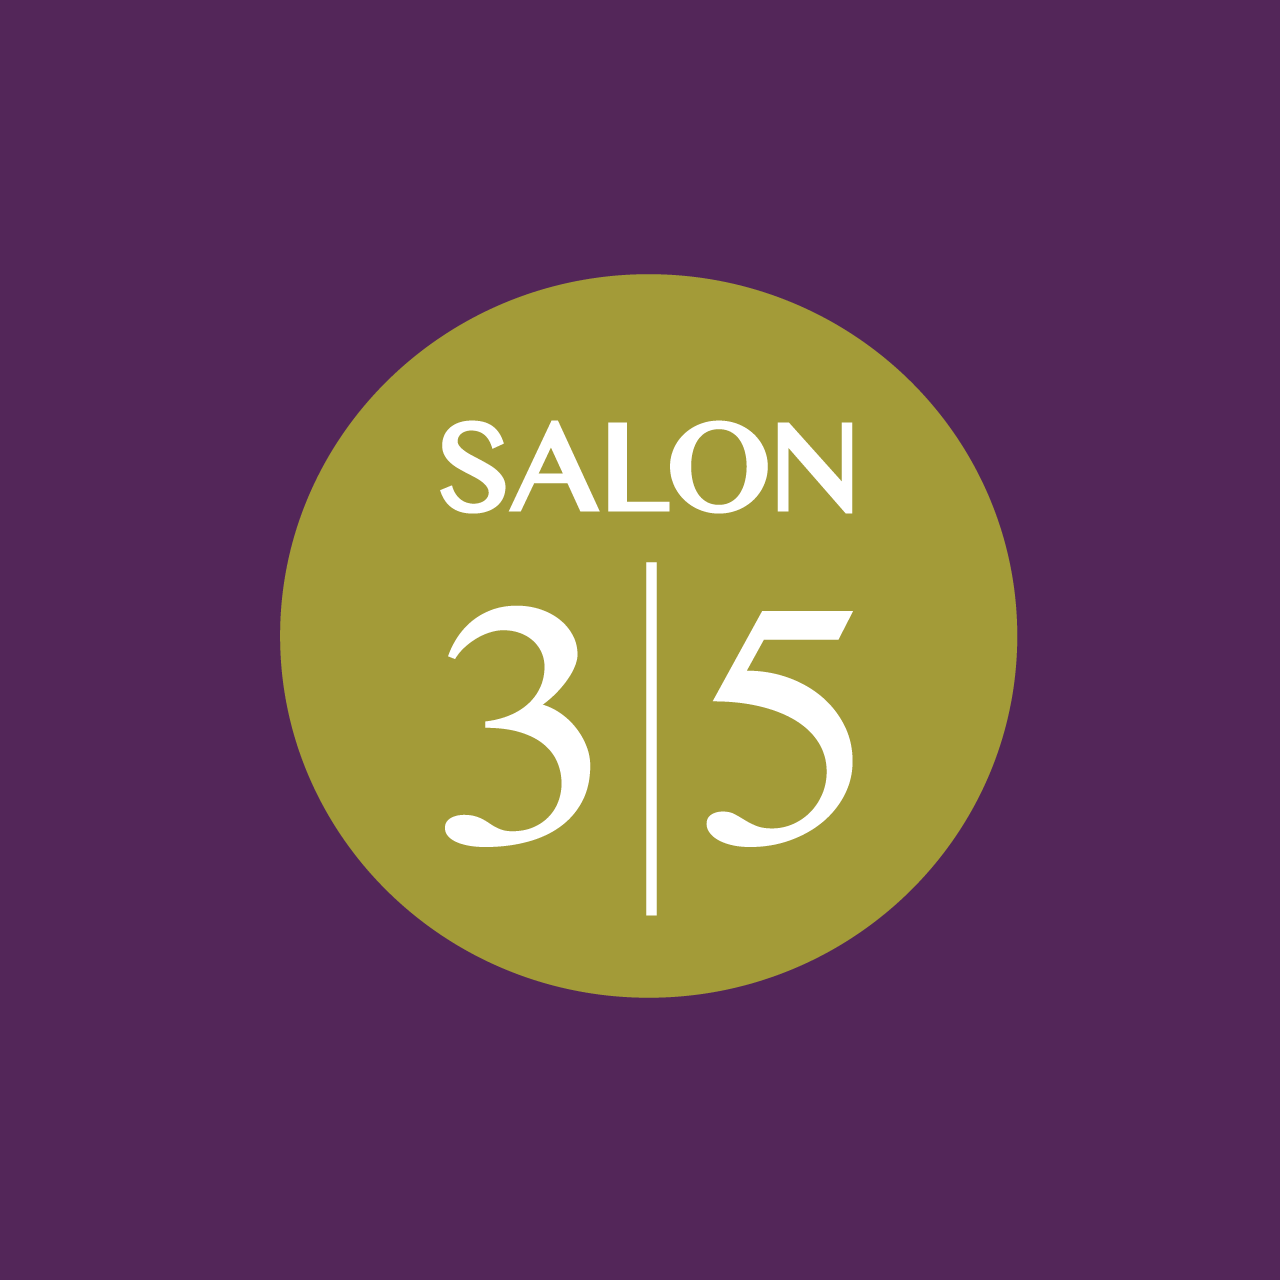 Salon35Logo